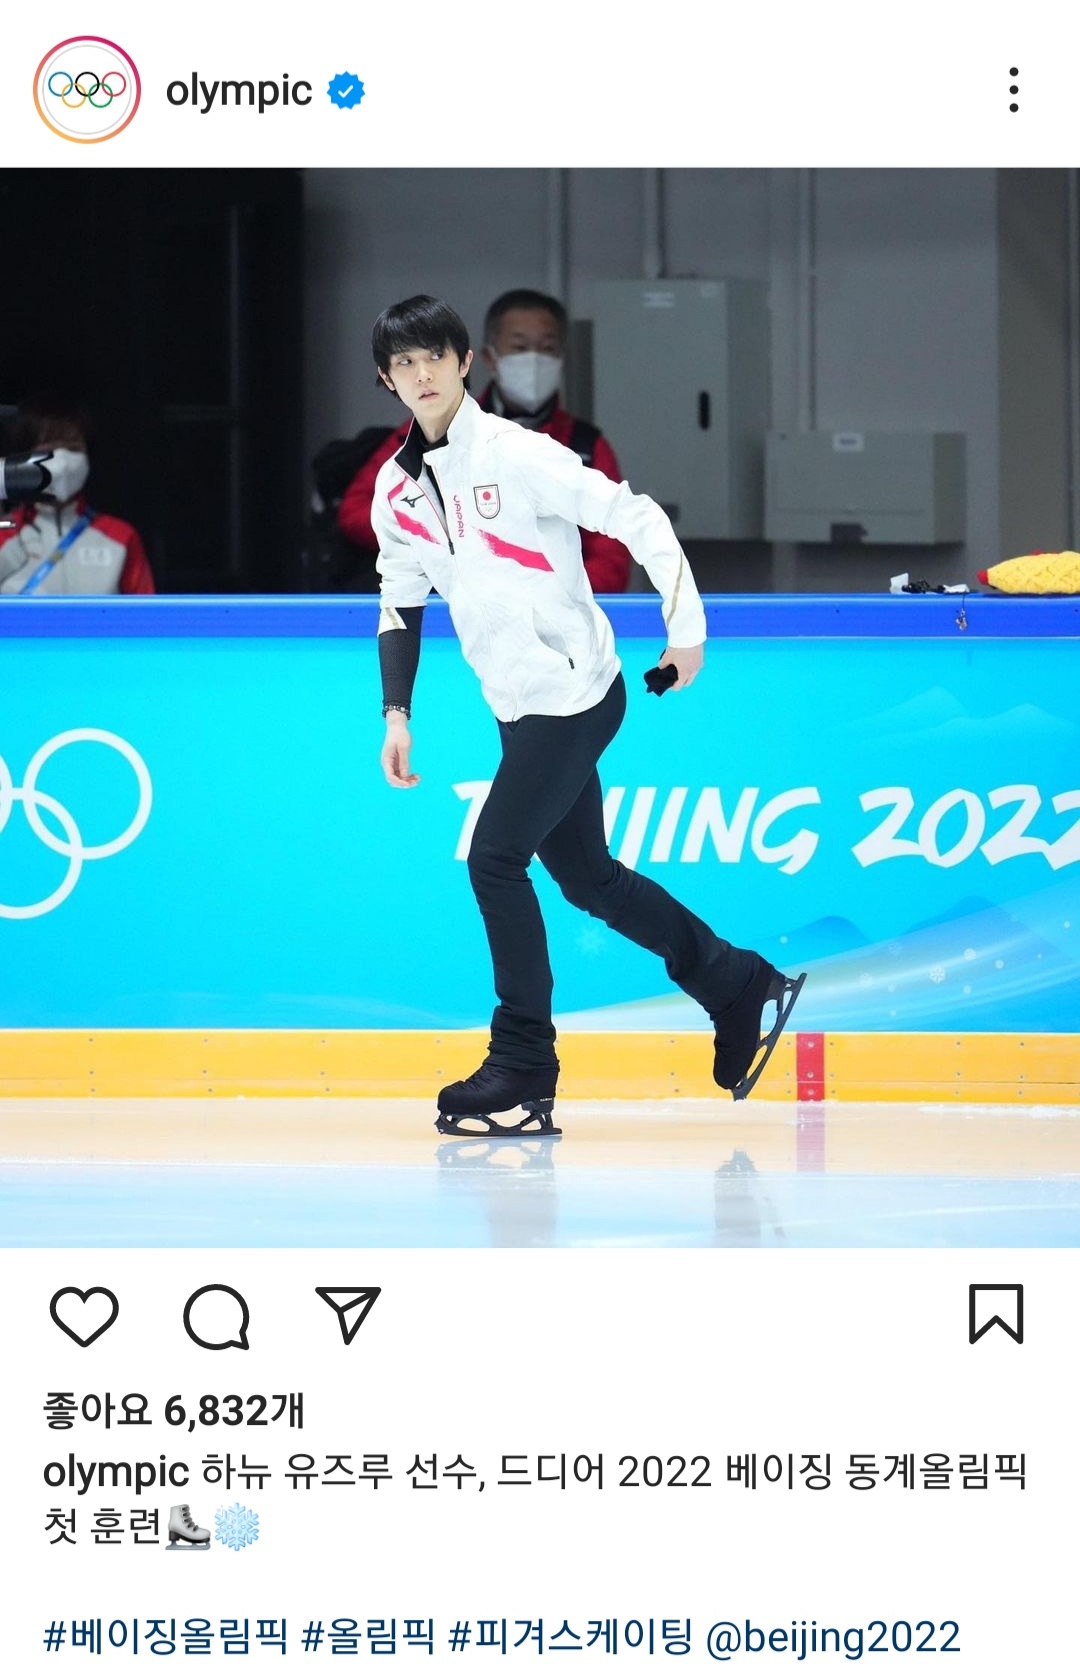 국제올림픽위원회(IOC)가 운영하는 올림픽 한국어 계정 공식 SNS에 한국 피겨 스케이팅 선수가 아닌 일본 선수의 사진이 올라와 논란이다. 올림픽 공식 SNS 캡처